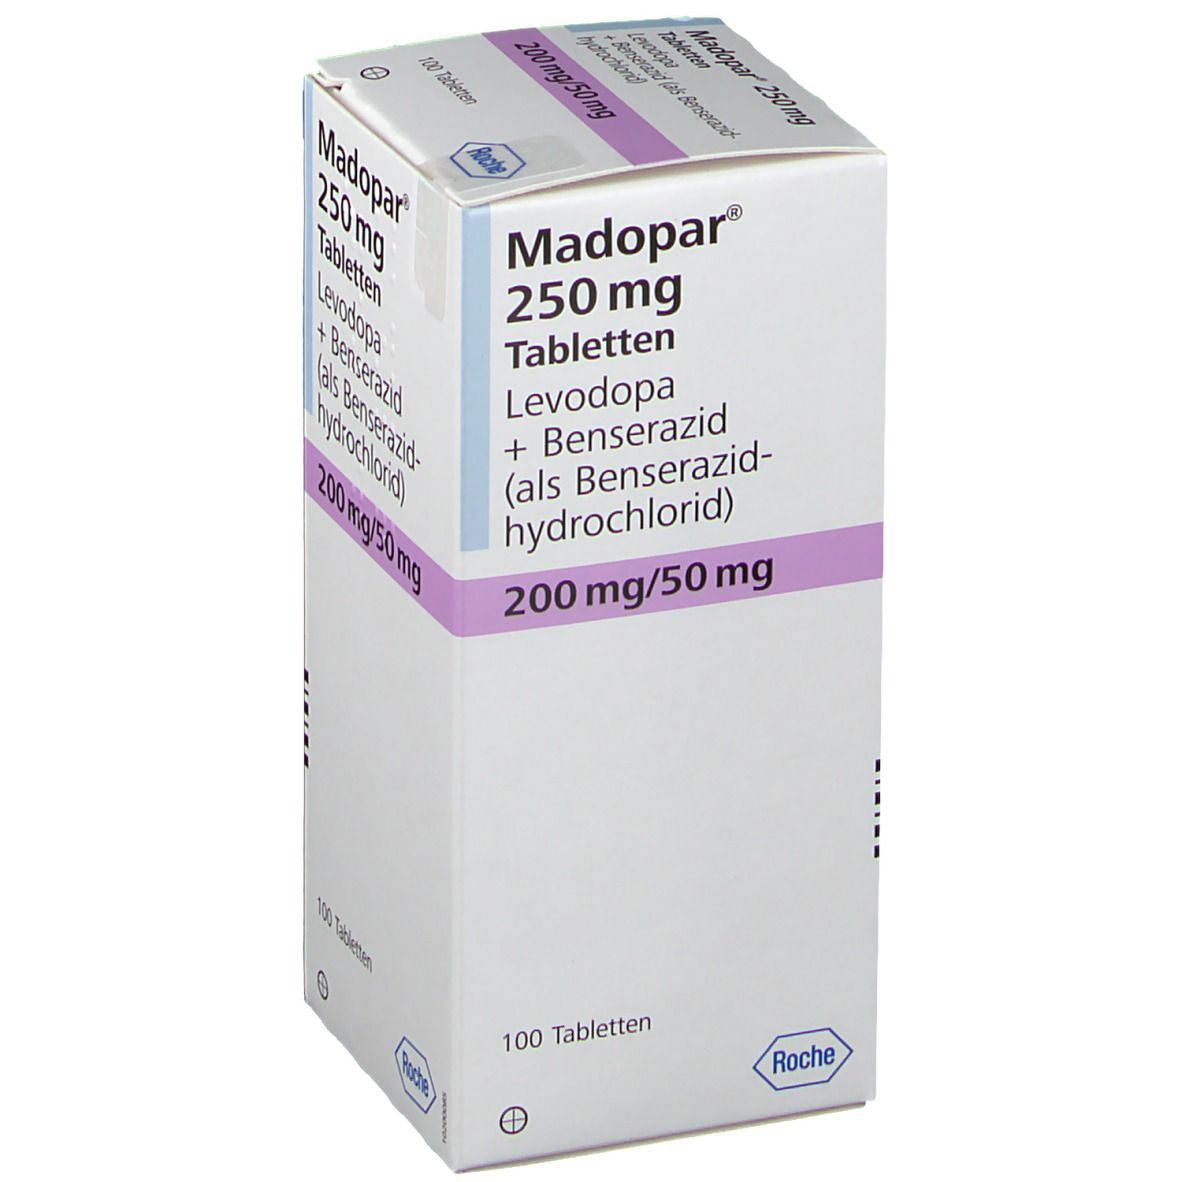 Мадопар 250 купить в москве. Мадопар 250 таблетки. Мадопар таблетки 125 мг. Леводопа Мадопар. Мадопар ГСС 250.